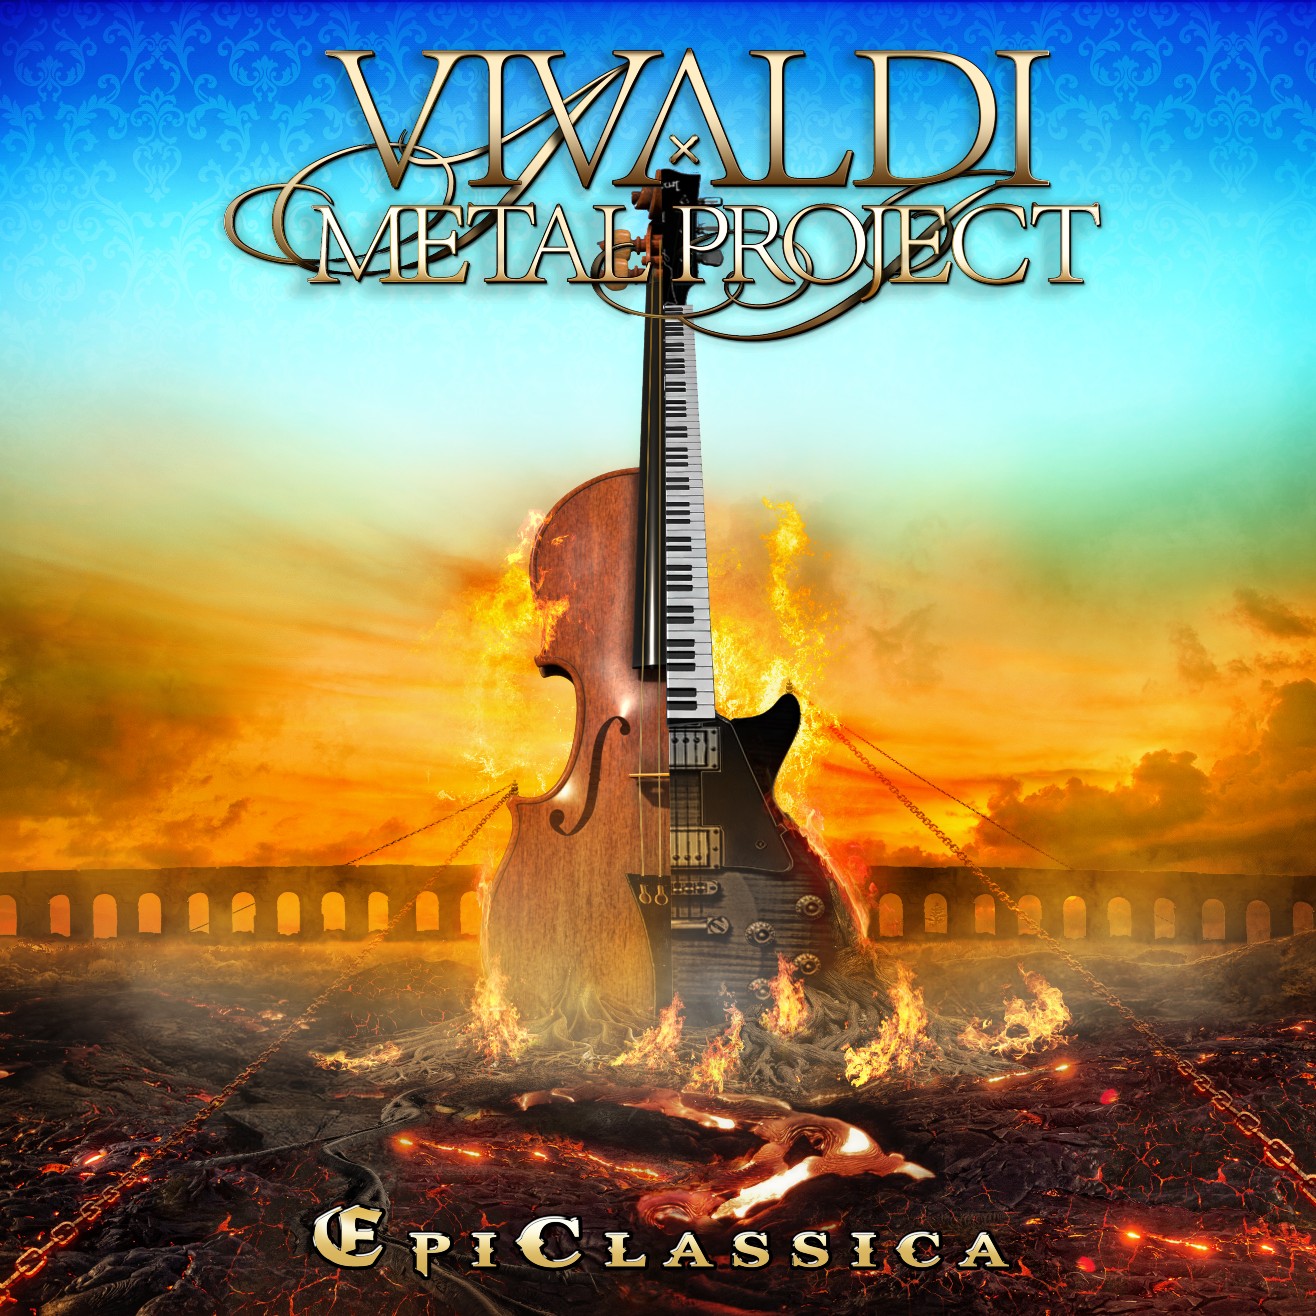 Vivaldi Metal Project EpiClassica album cover by Nello DellOmo 1.jpg